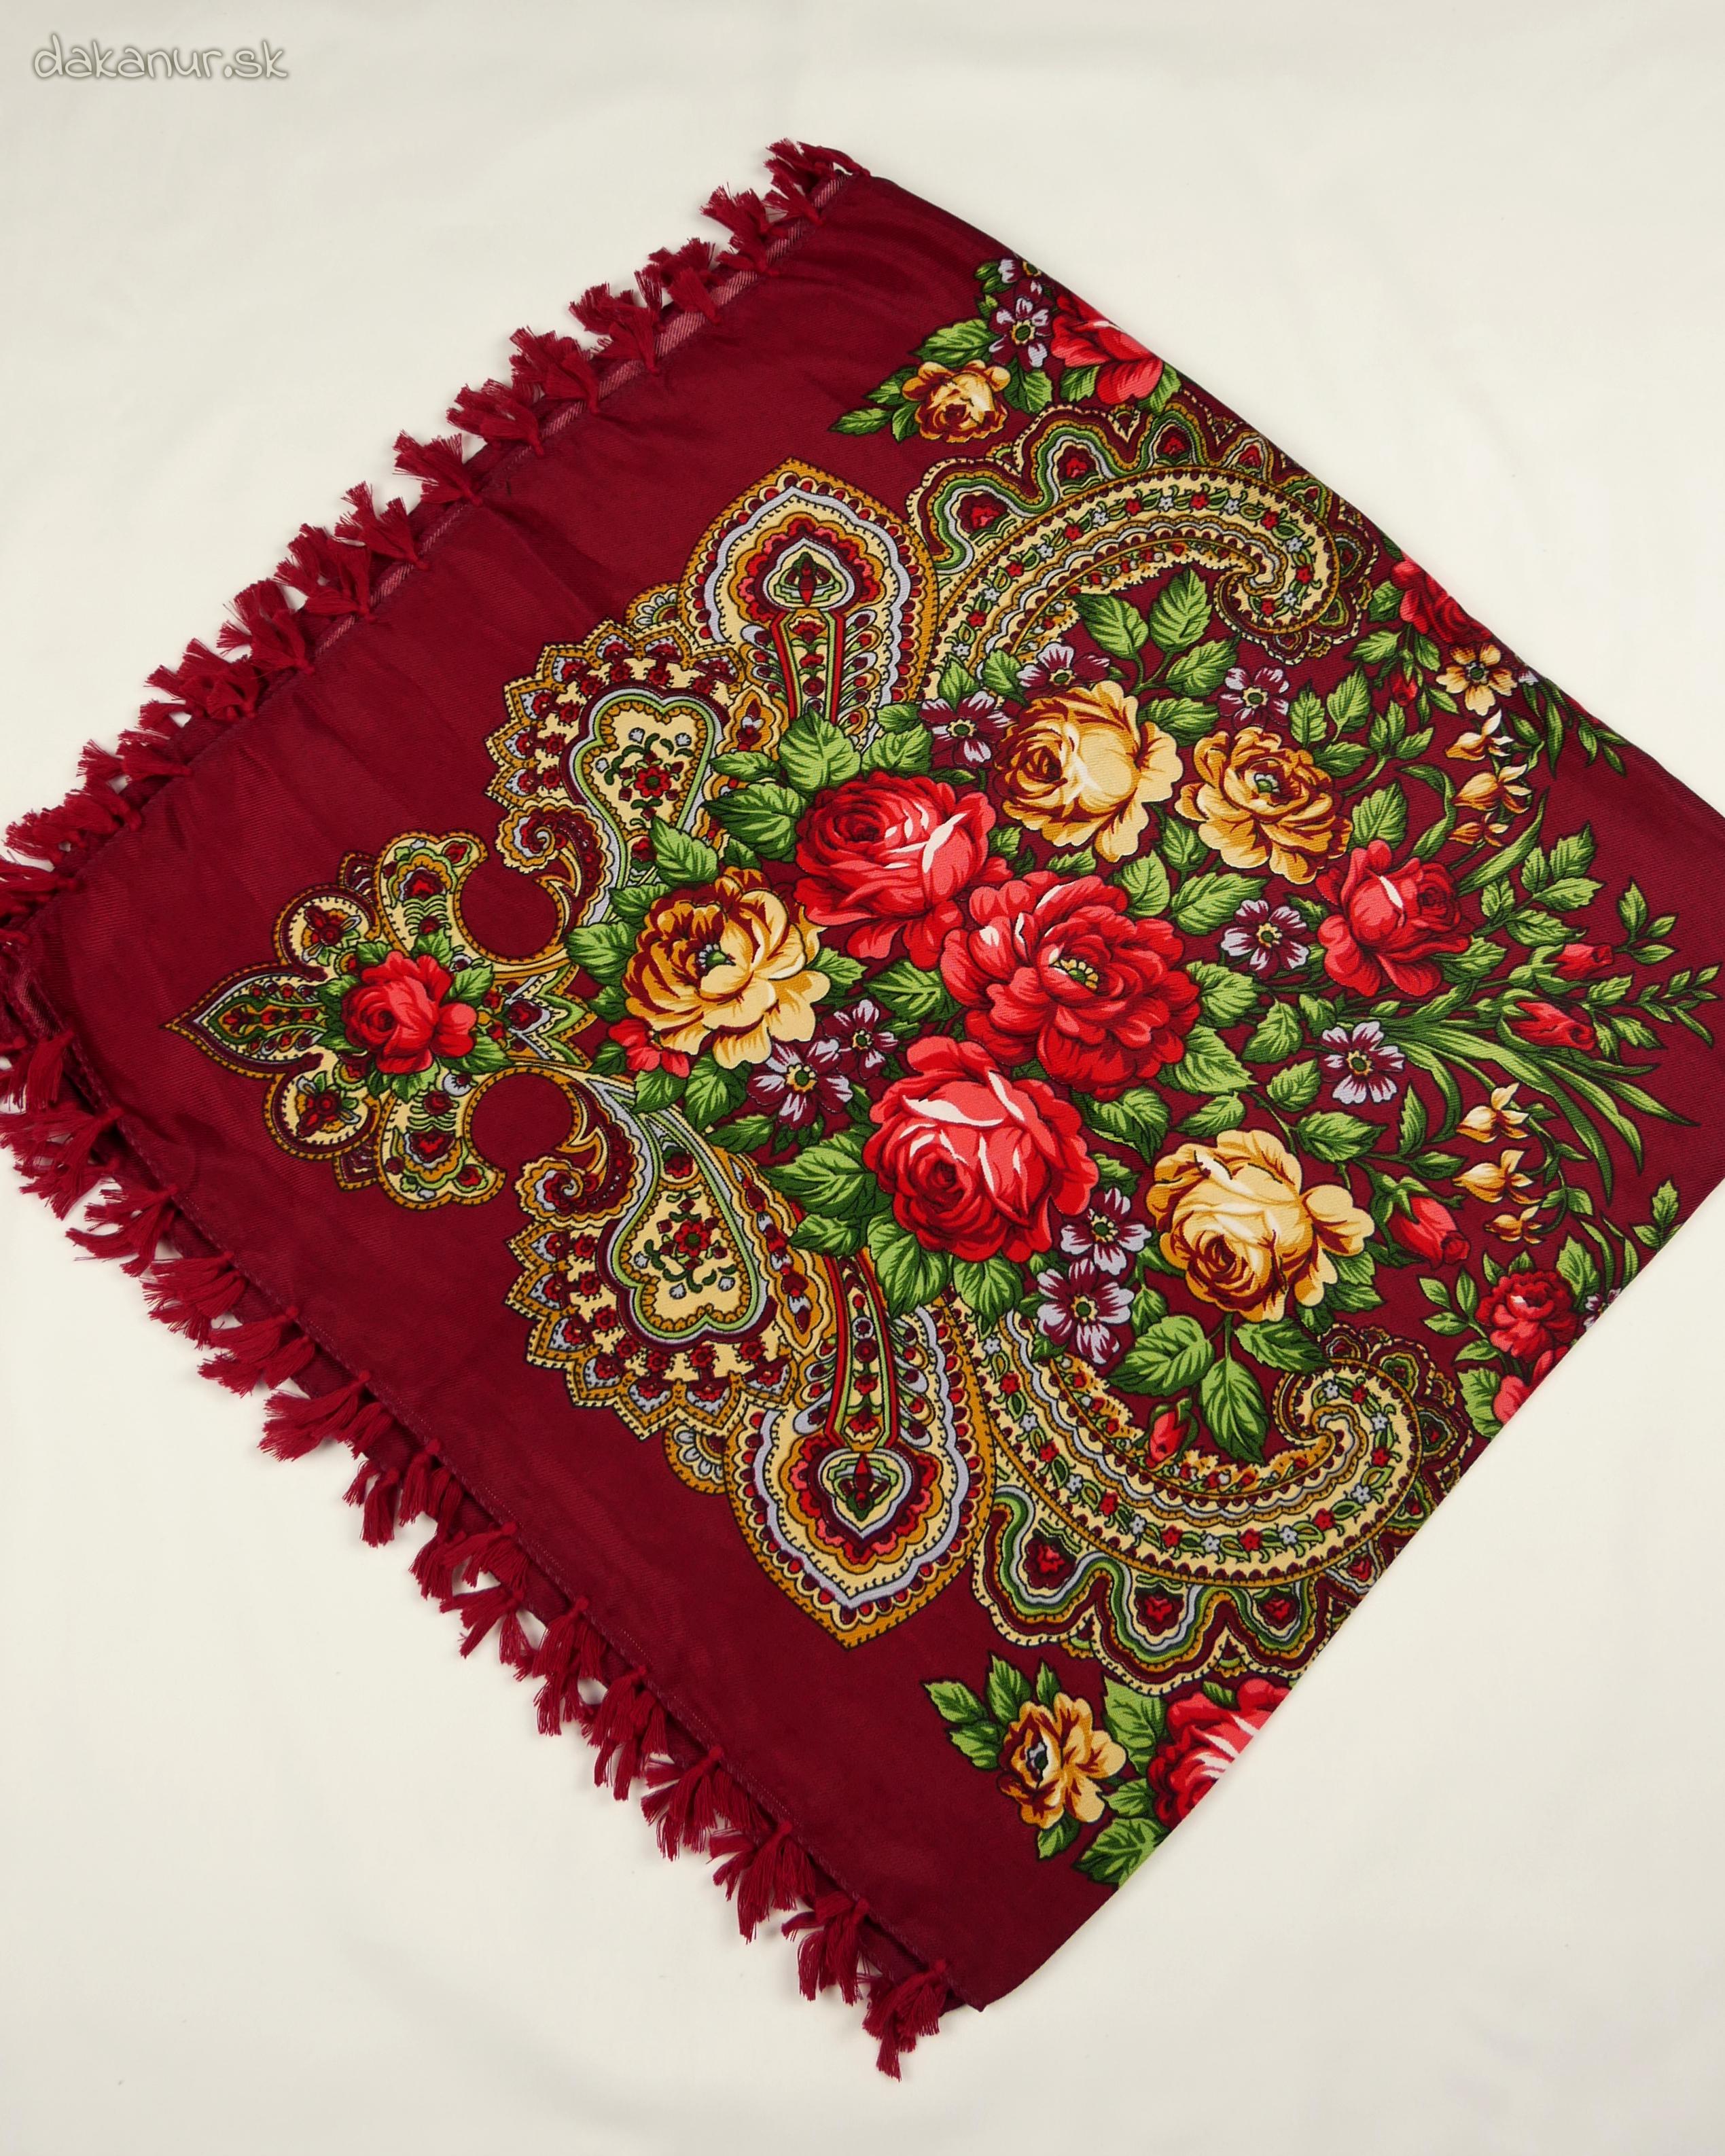 Tradičná kvetovaná bordová folklórna šatka, hustka, chustka